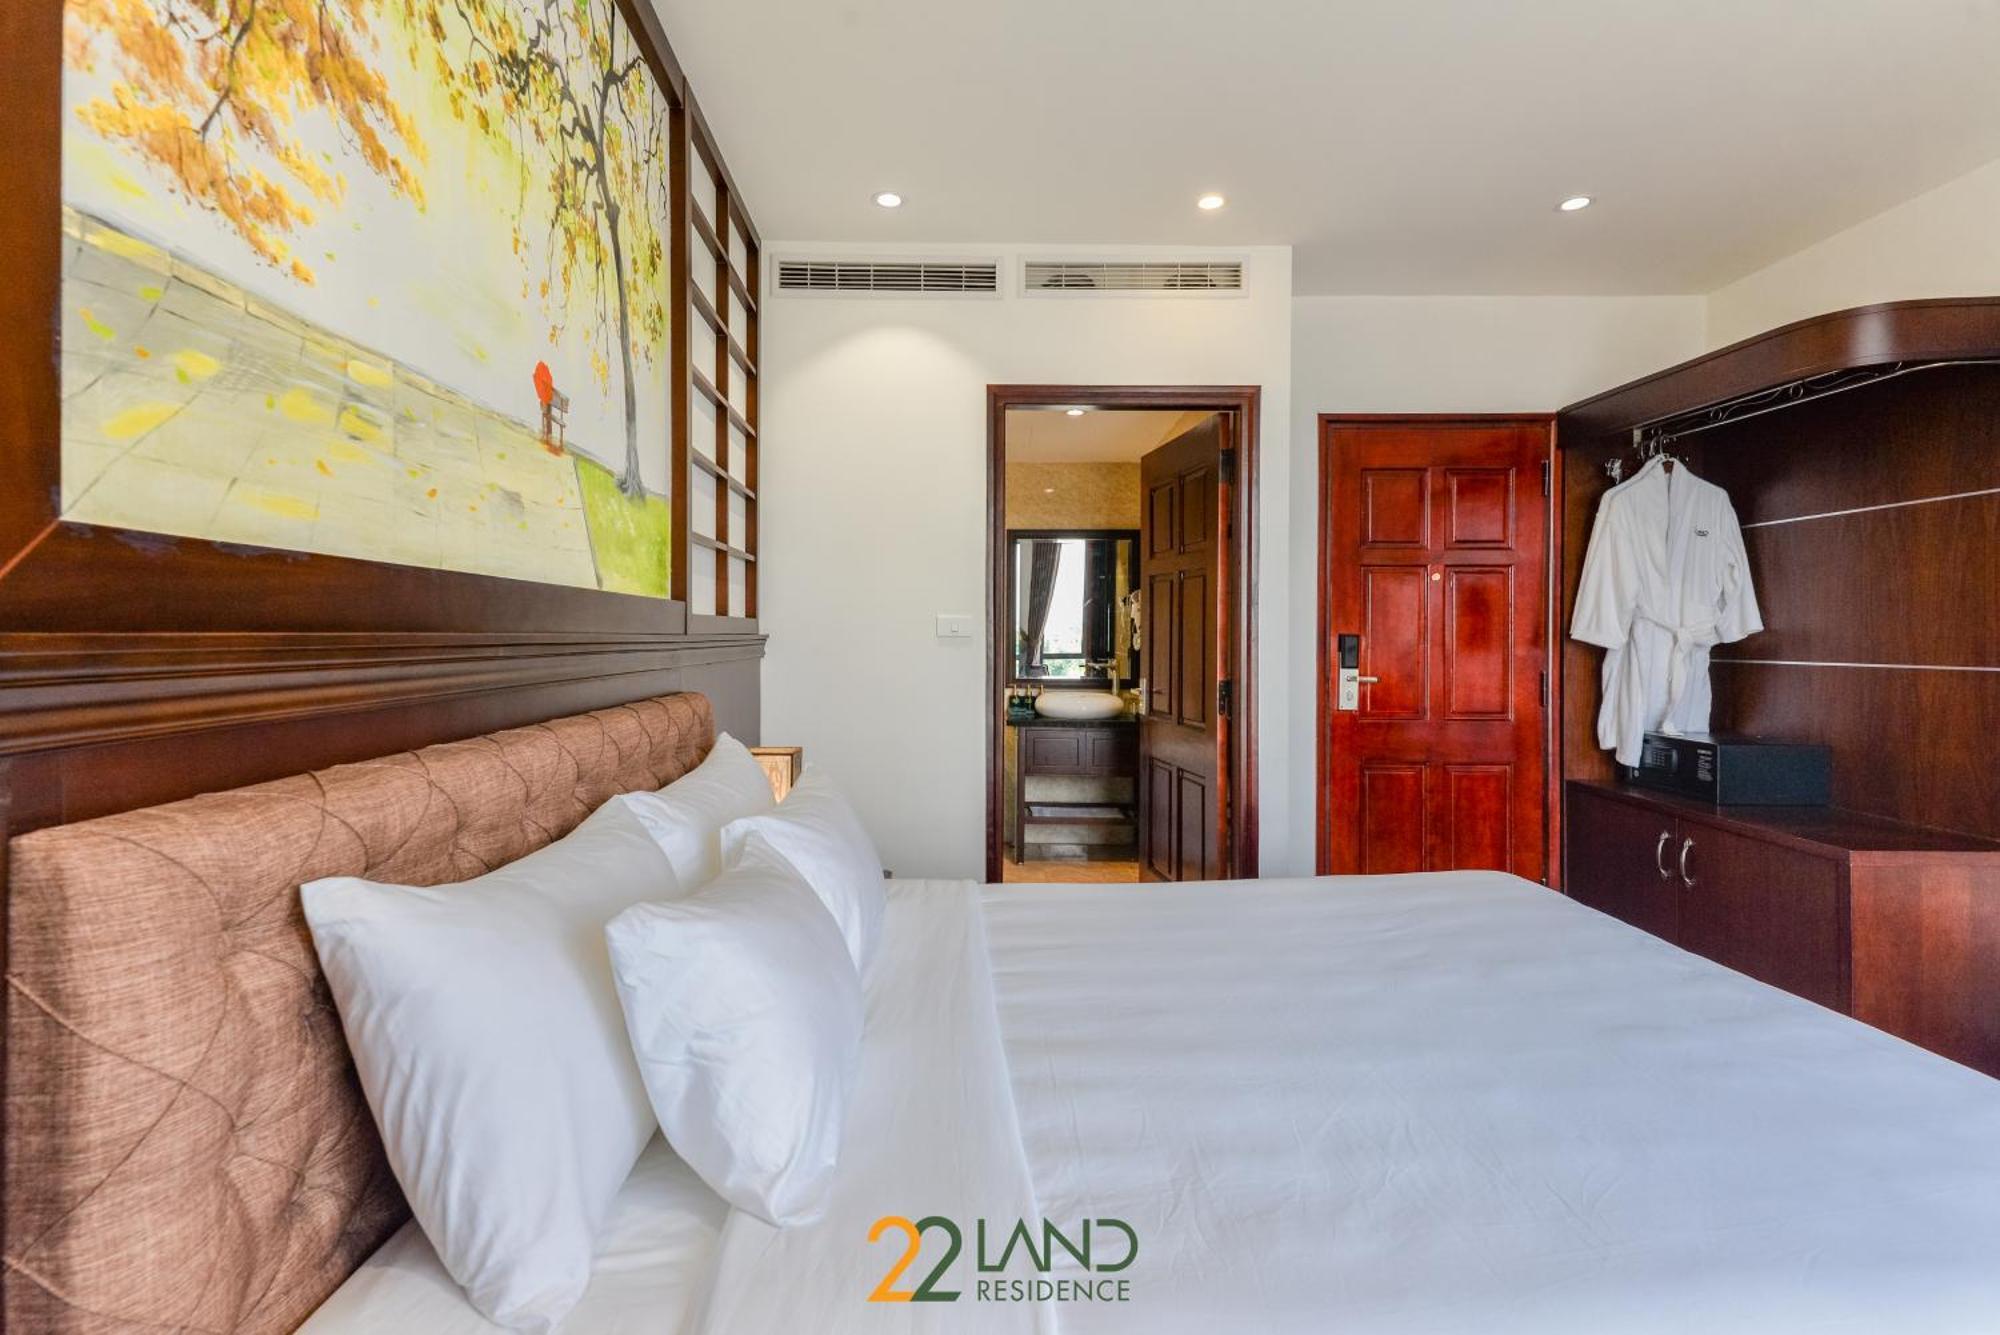 22Land Residence Hotel & Spa Ha Noi Hanoj Pokoj fotografie